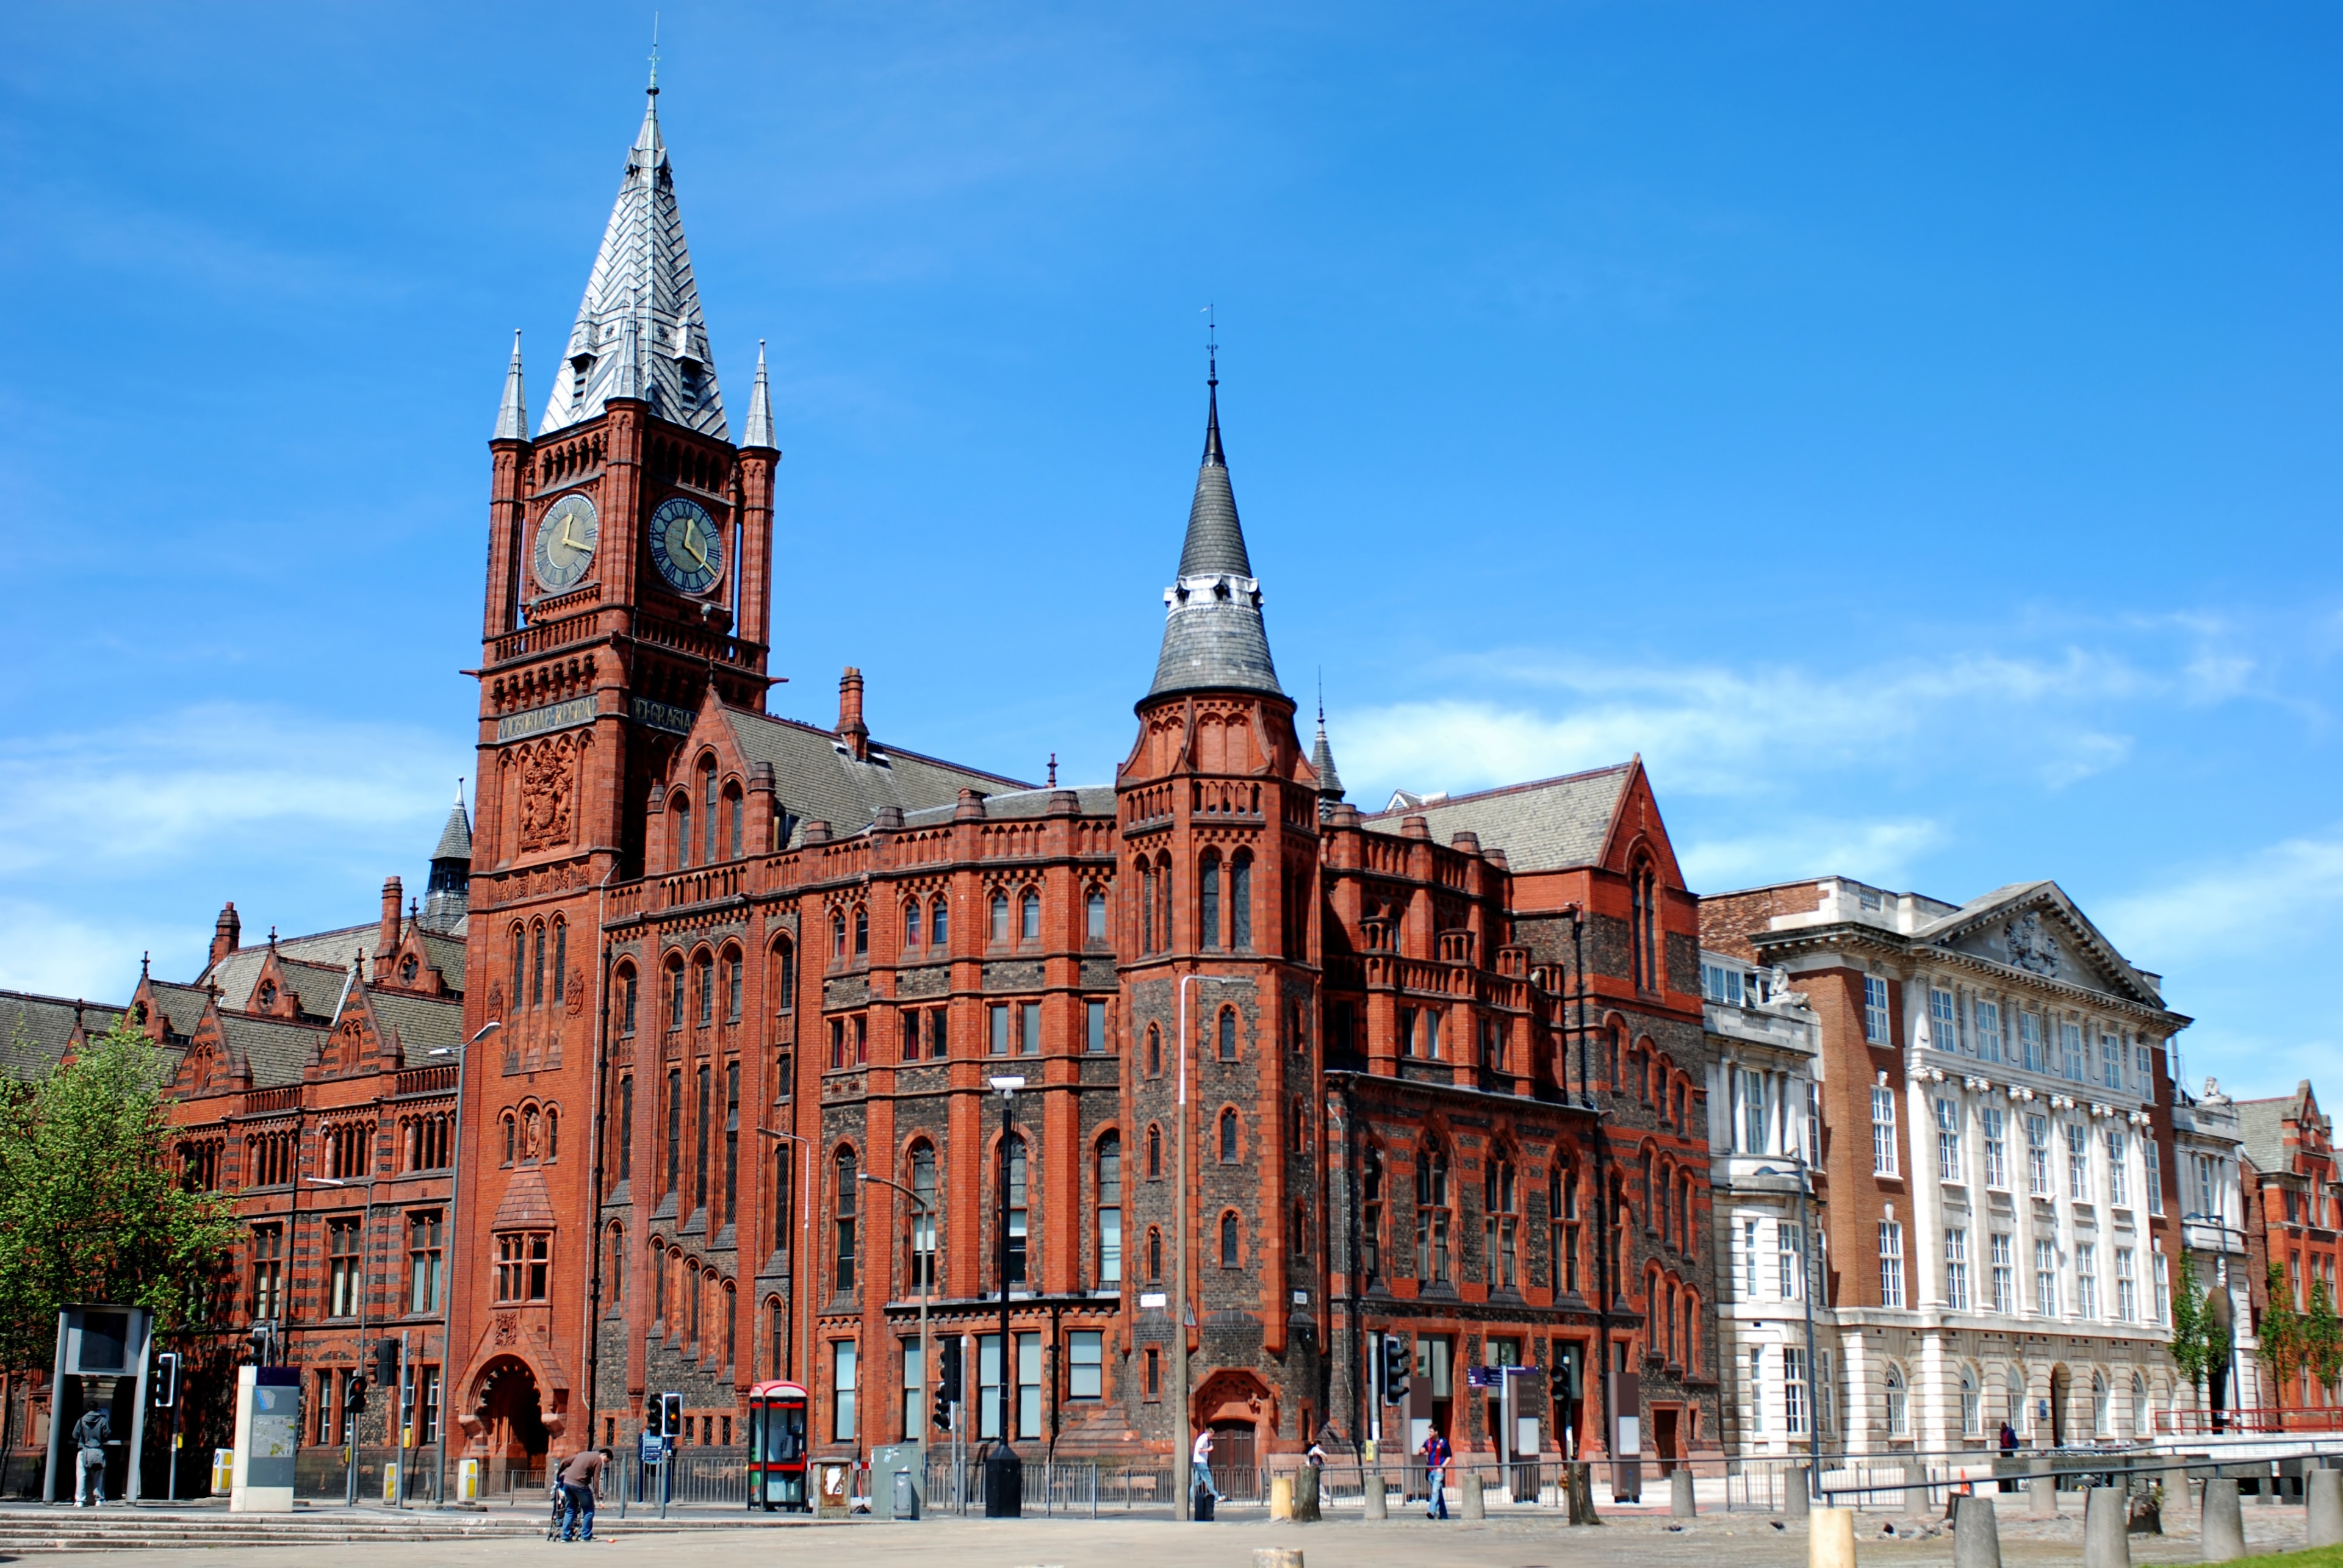 Nyd atmosfæren ved campusset University of Liverpool, som er et af de mest populære universiteter i Liverpool. Området er kendt for sine shoppingmuligheder, som du kan besøge, samt for sin havnefront. 